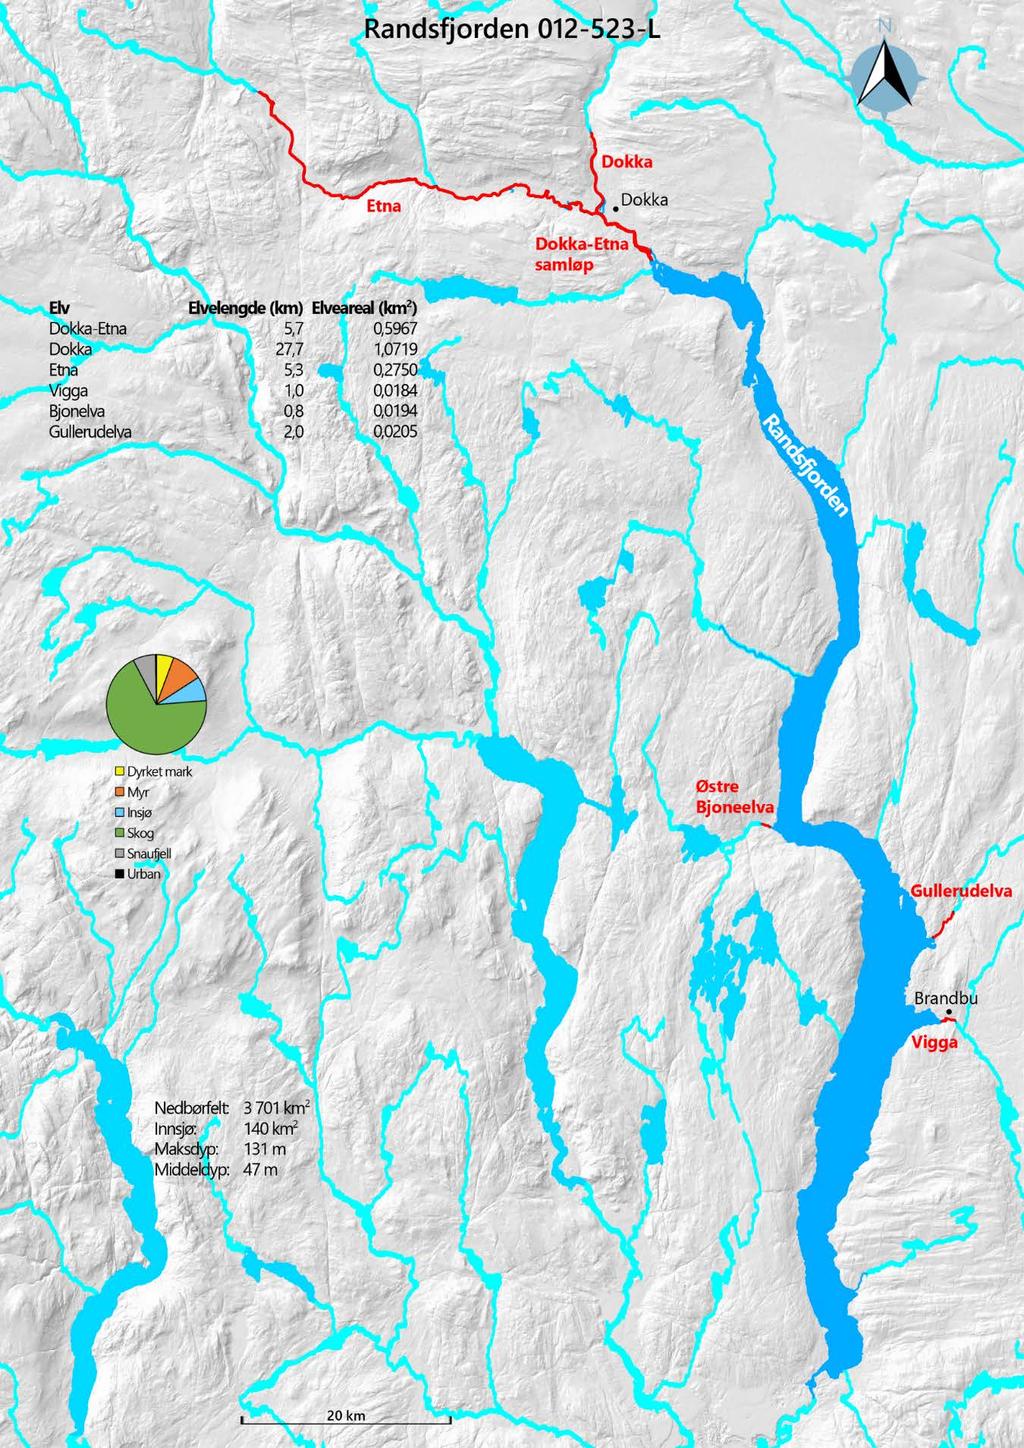 Figur 3.10. Kart over Randsfjorden i Oppland med de viktigste gyte- og oppvekstelvene for storørret.